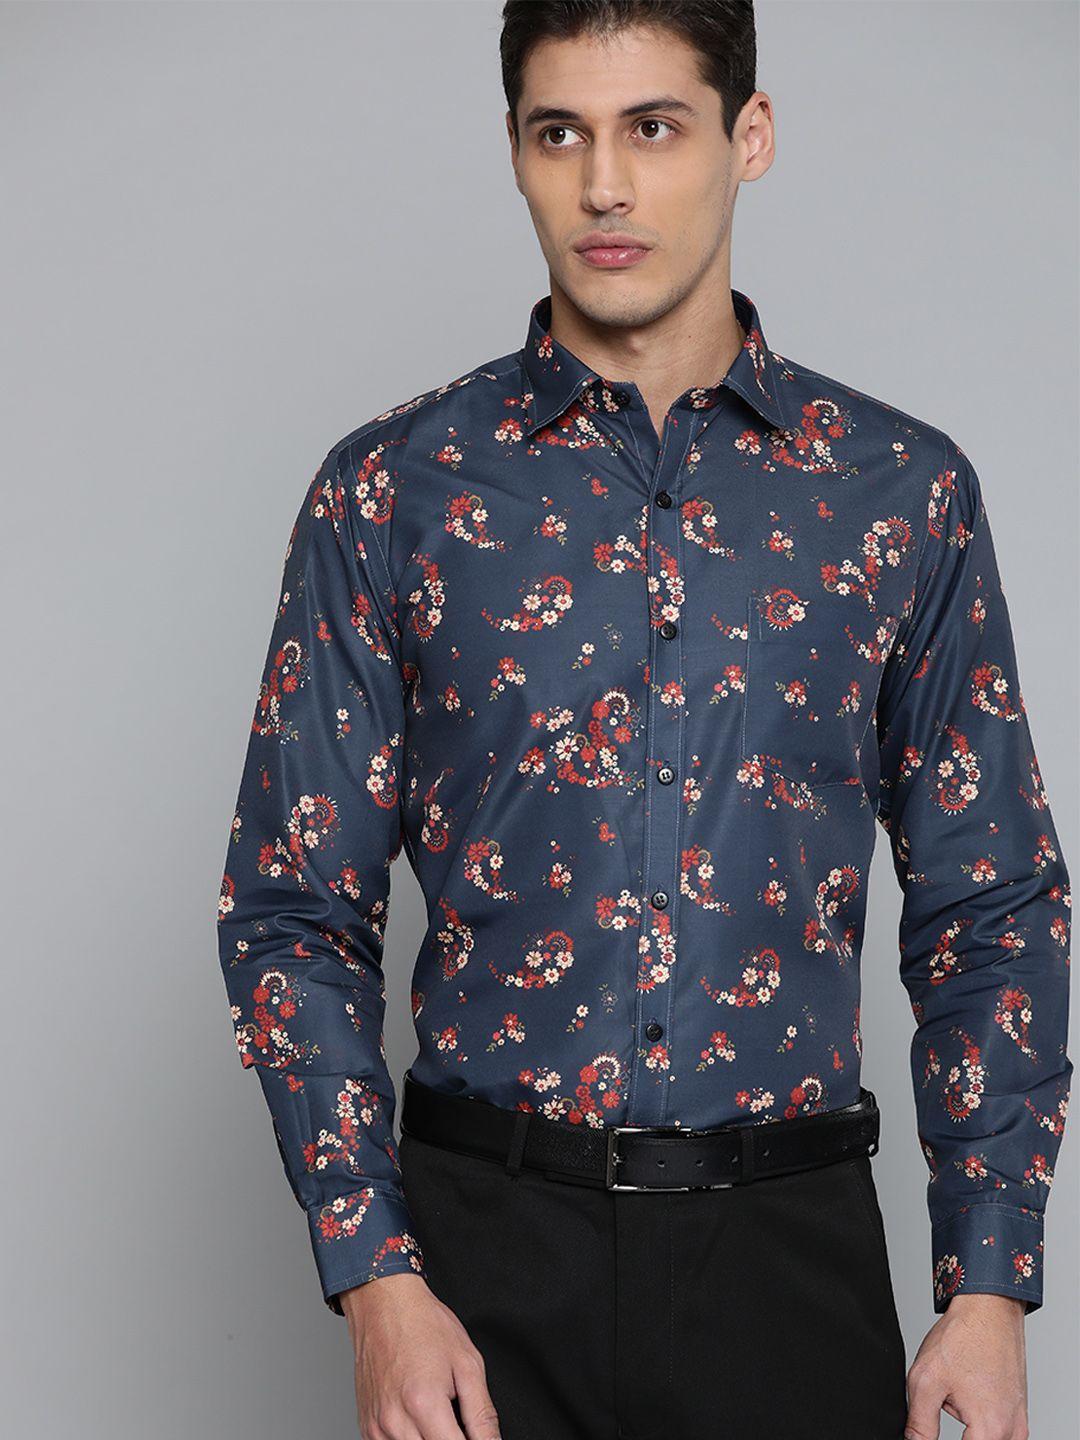 dennison men charcoal grey smart slim fit floral printed formal shirt